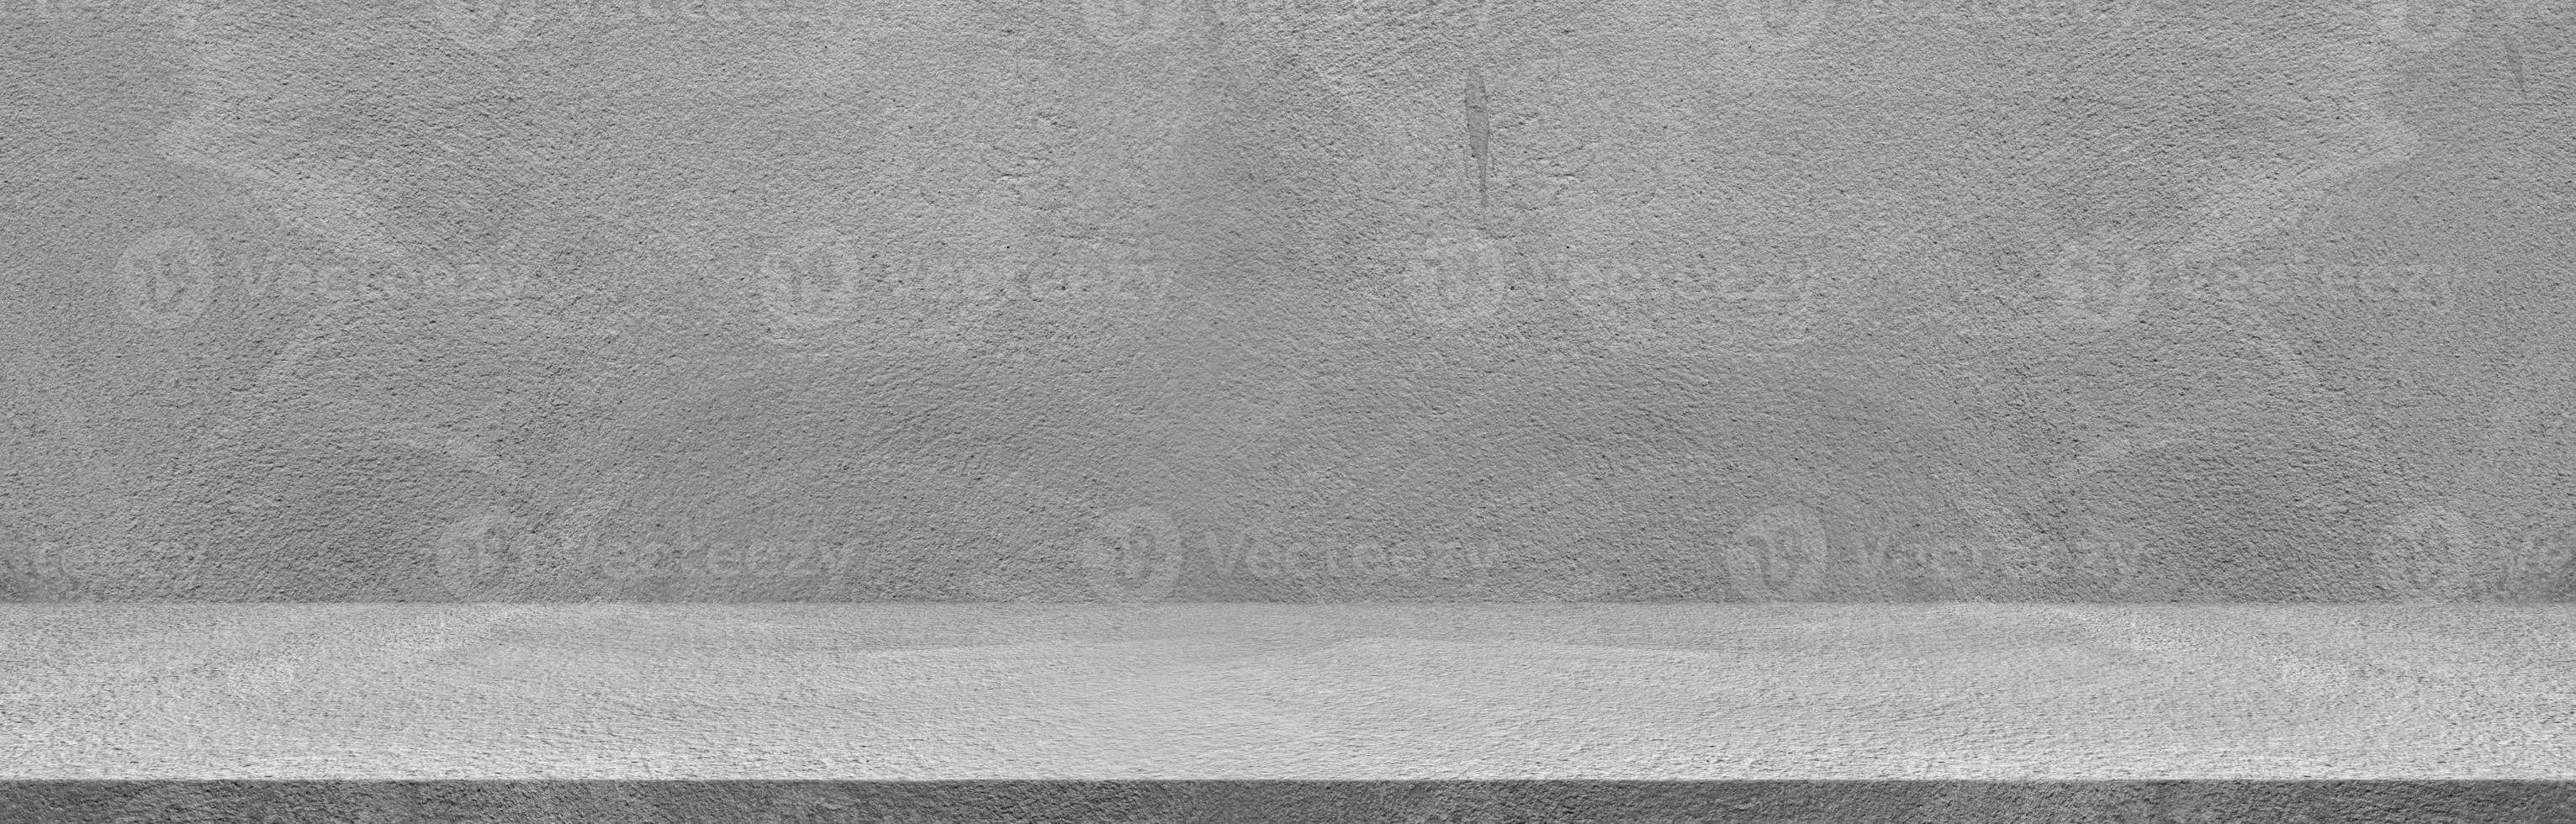 pared de cemento decorativa horizontal gris. fondo de la habitación. fondo de papel tapiz abstracto. fondo. foto